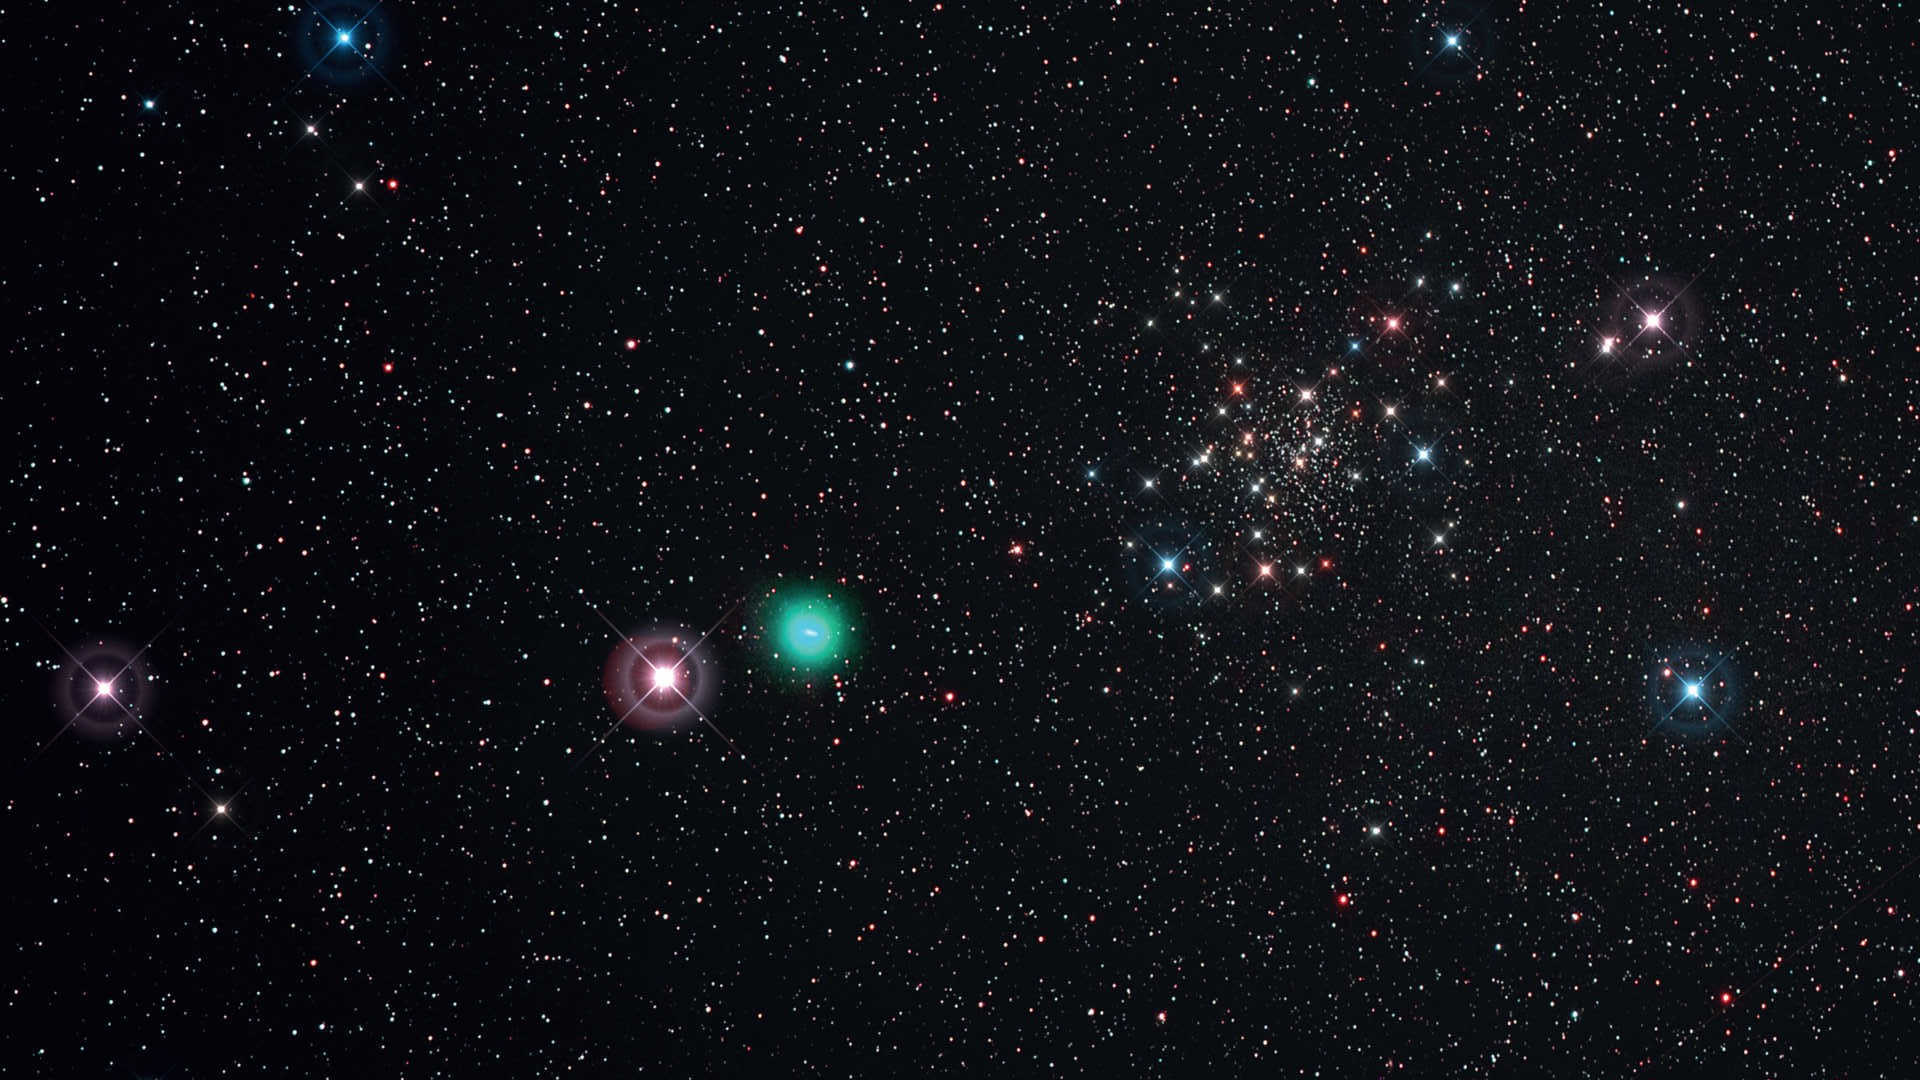 Den klara natten den 21 maj 2015 möjliggjorde fotografering av kometen C/2014 Q2 (Lovejoy) när den passerade vid kanten av stjärnhopen NGC188. För denna bild användes en Kowa Telephoto Lens/Scope (brännvidd: 350 mm, F/4) monterad på en Canon 6D (modifierad för Hα) med ett UHC-S-filter. Summabilden skapades från sex exponeringar med en exponeringstid på 450 sekunder vardera (ISO 800; total exponeringstid: 45 minuter). Bilderna bearbetades med DeepSkyStacker och Photoshop; spikes är tillagda enbart av estetiska skäl. U. Dittler